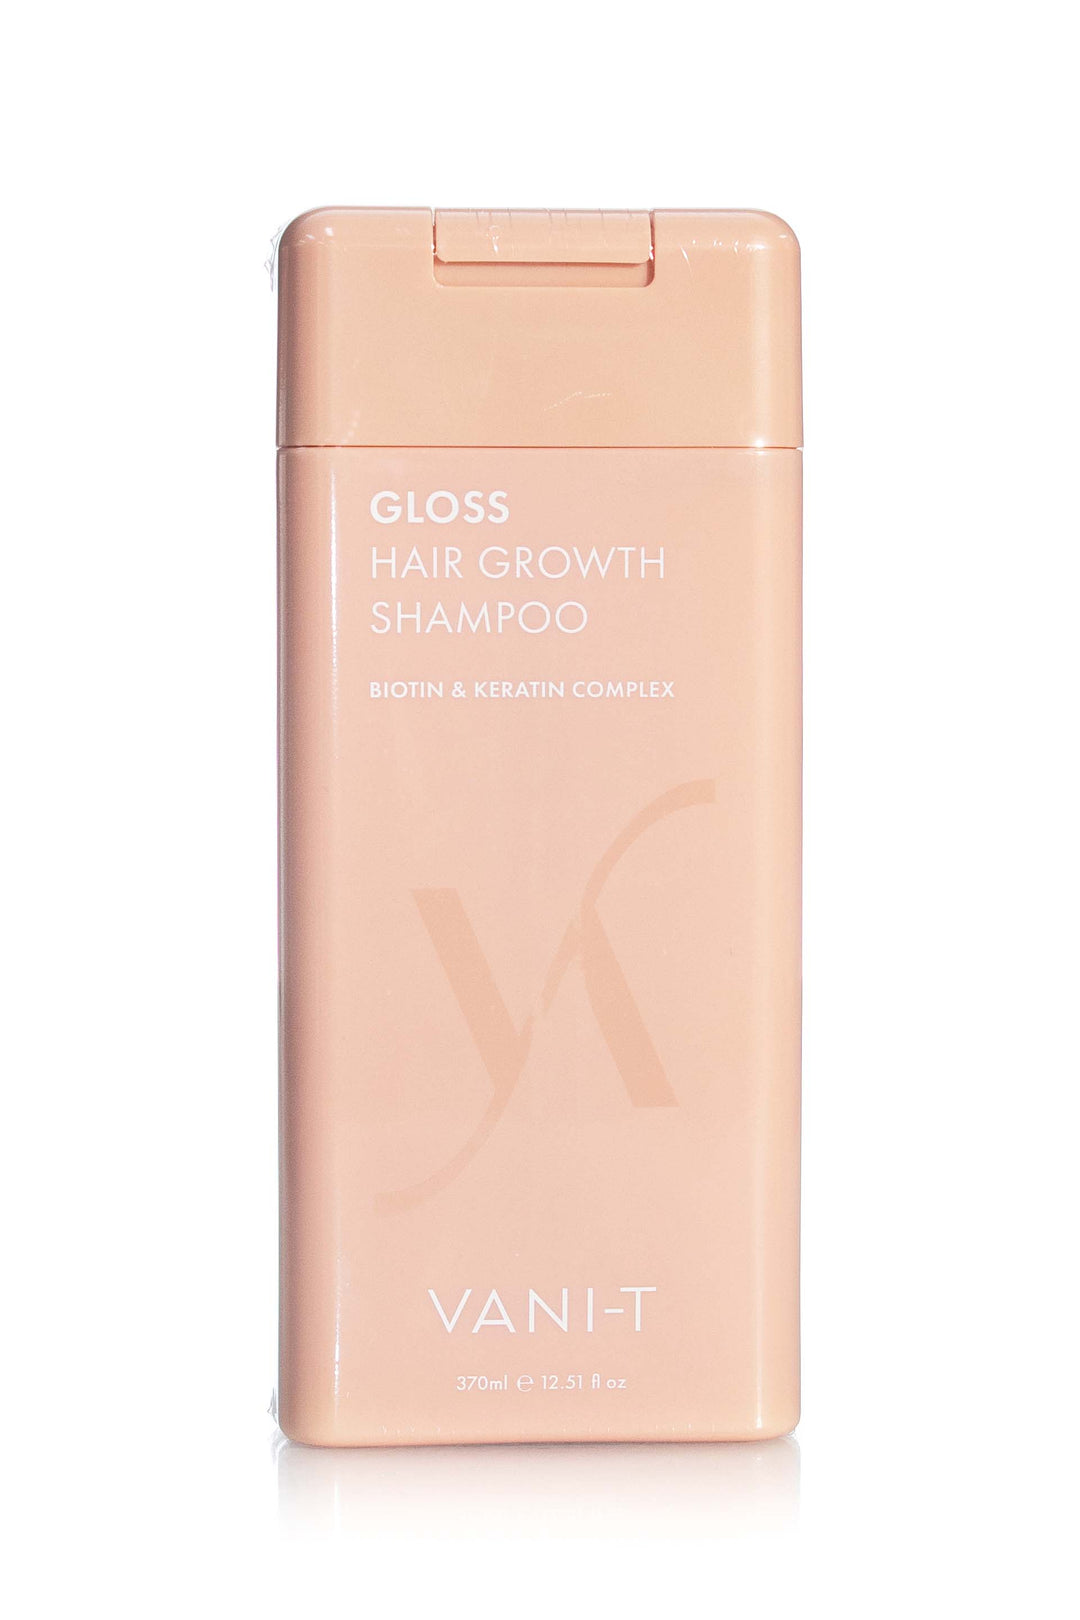 Vani-T Gloss Hair Growth Shampoo